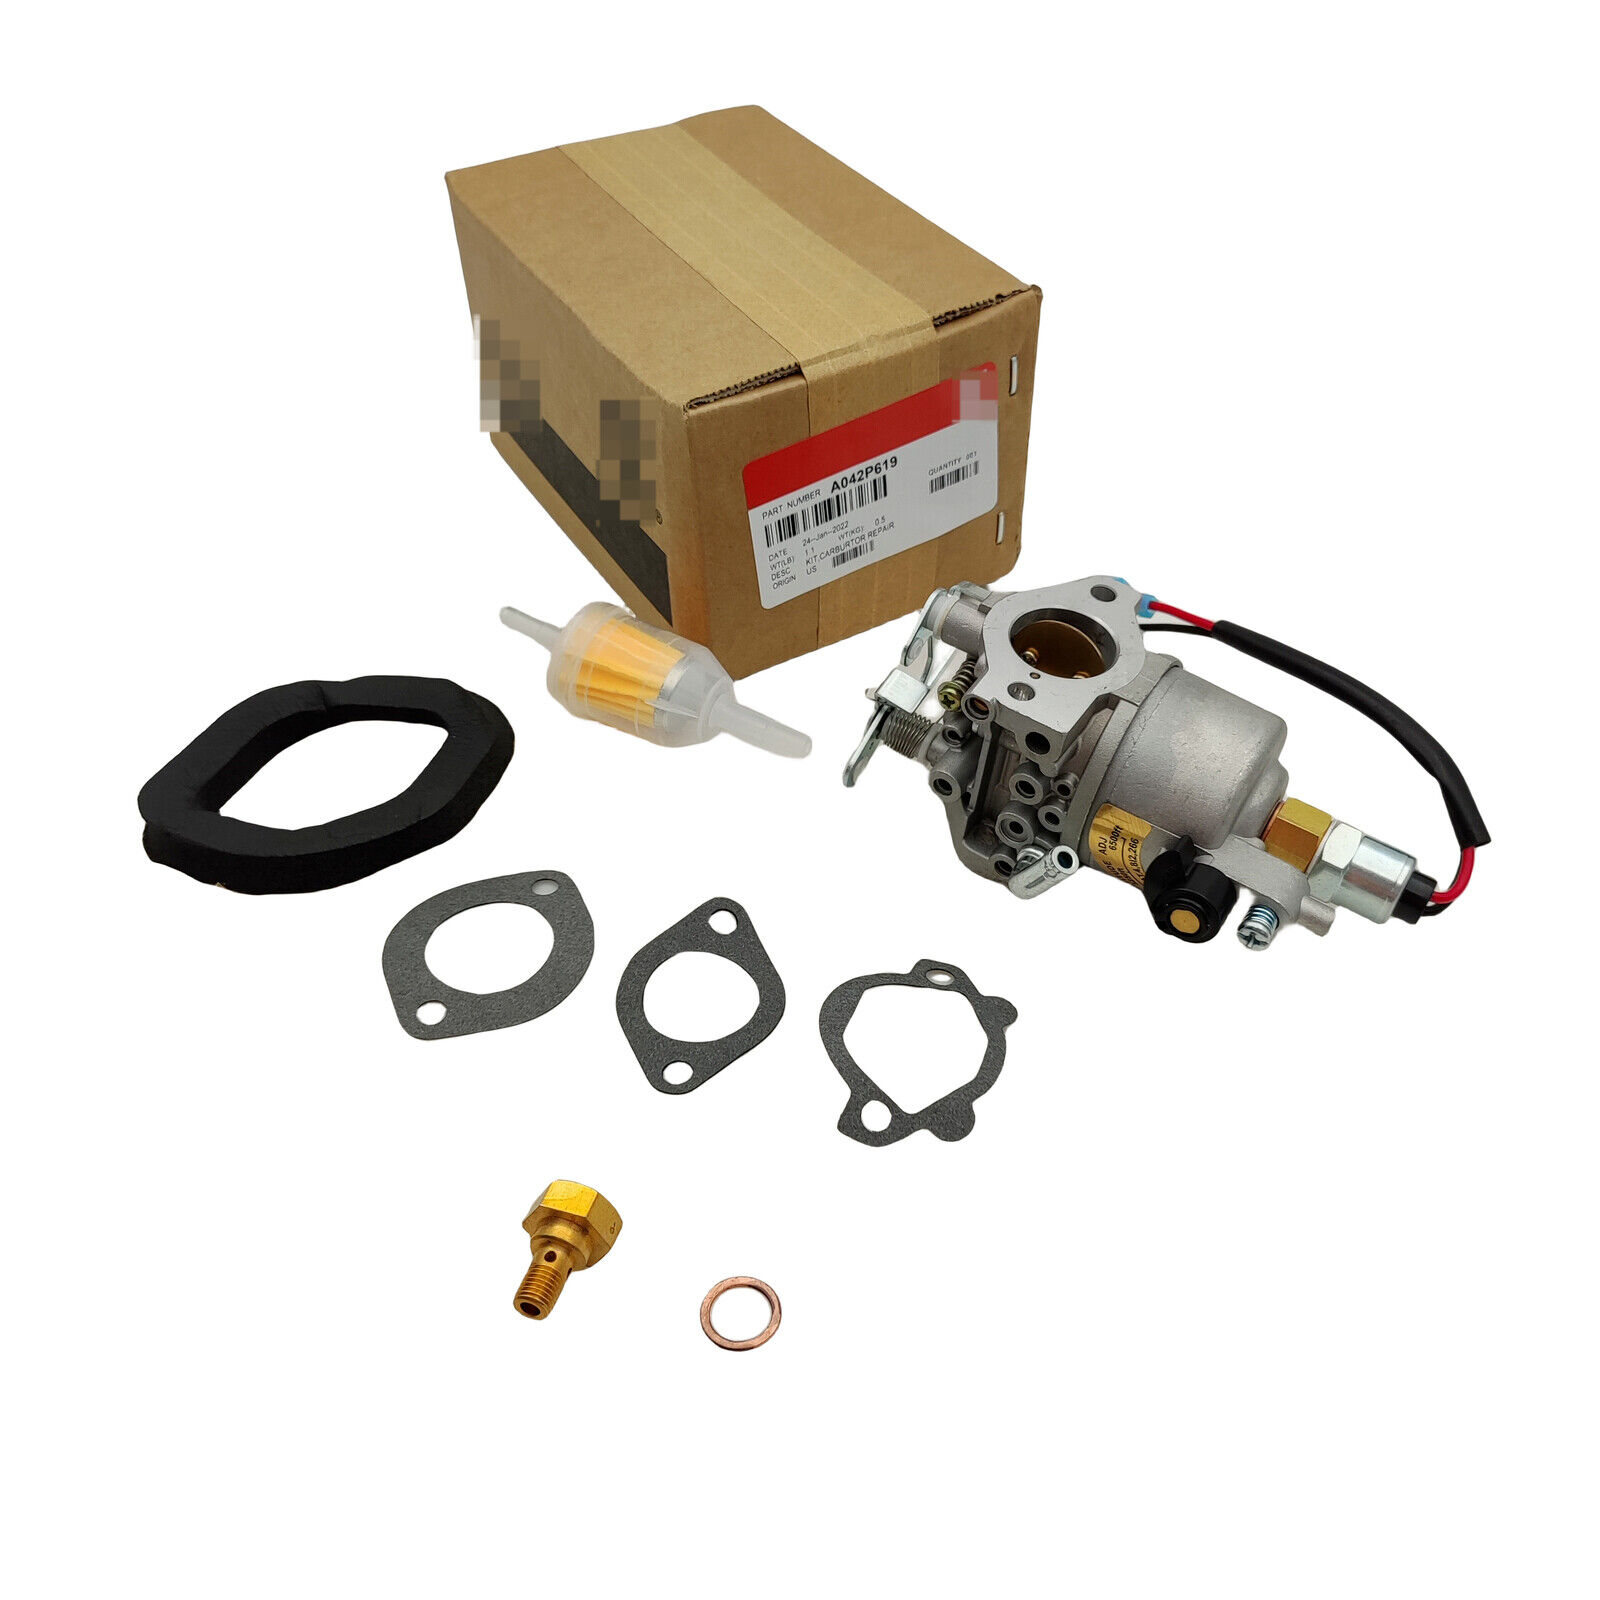  Carburetor For Onan Microquiet 4000 Watt 4KYFA26100 P K Generator Carb 146-0785